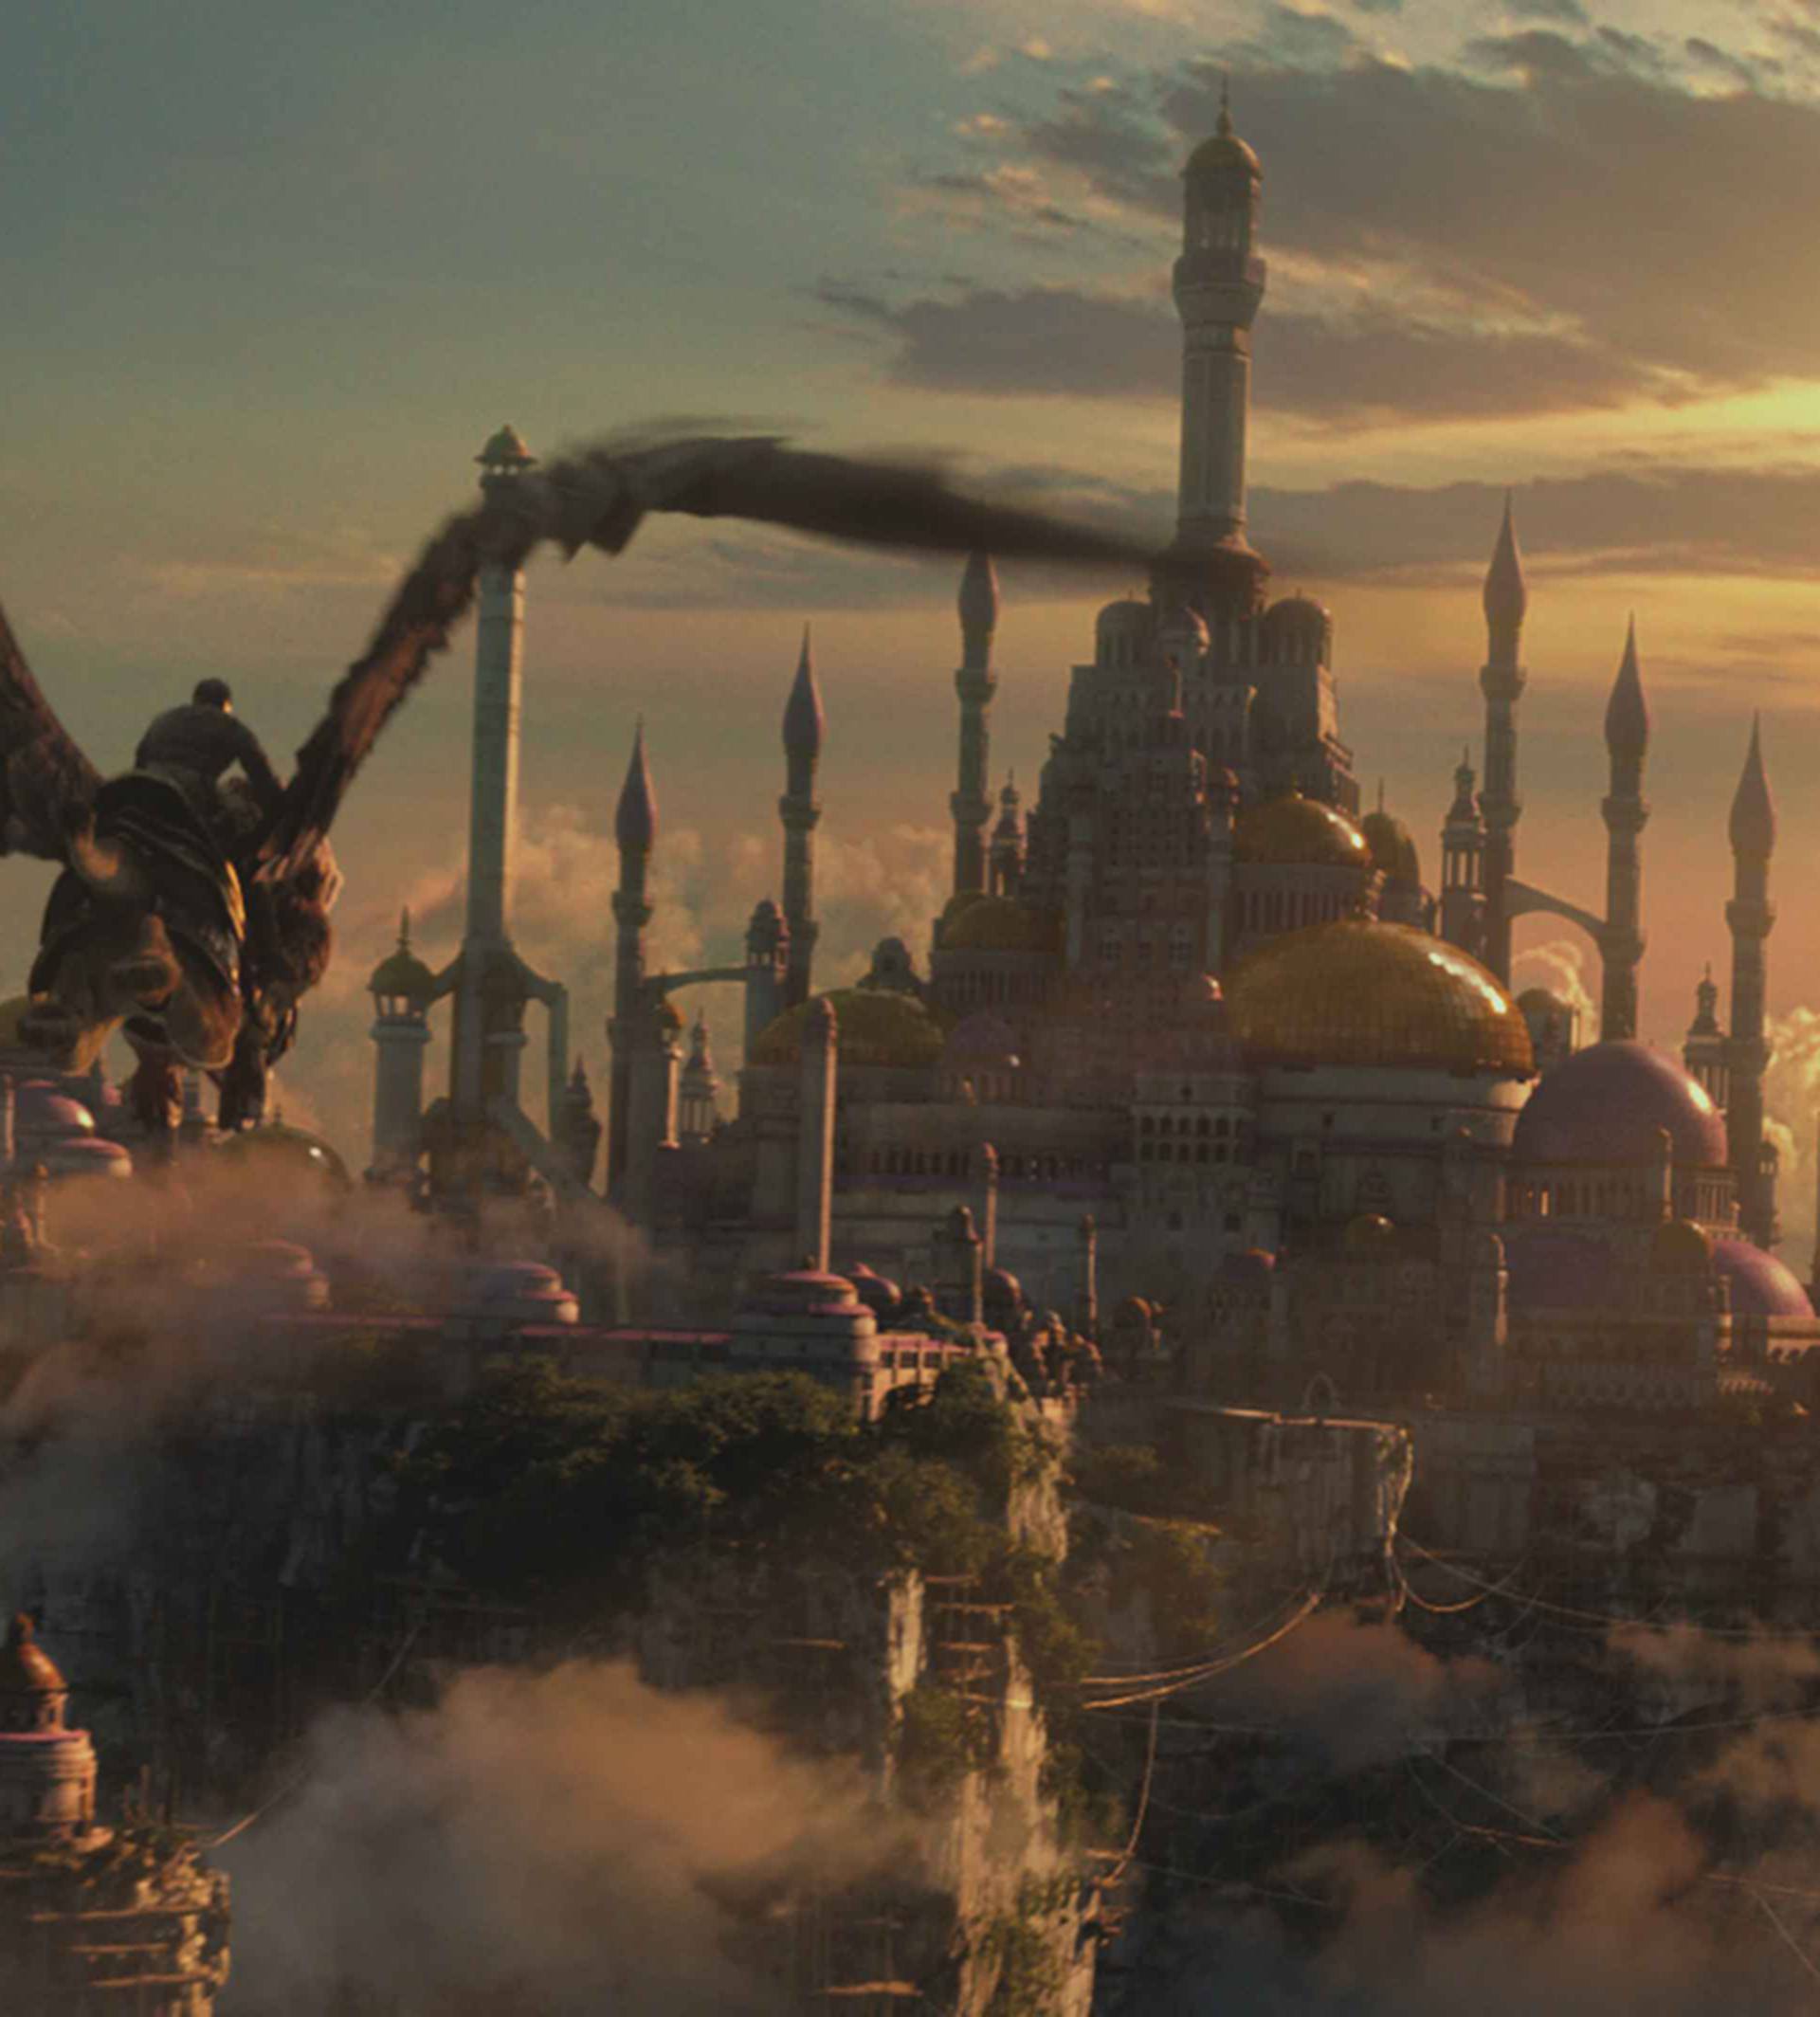 'Warcraft: Početak': Svo oružje su iskovali majstori i kovači